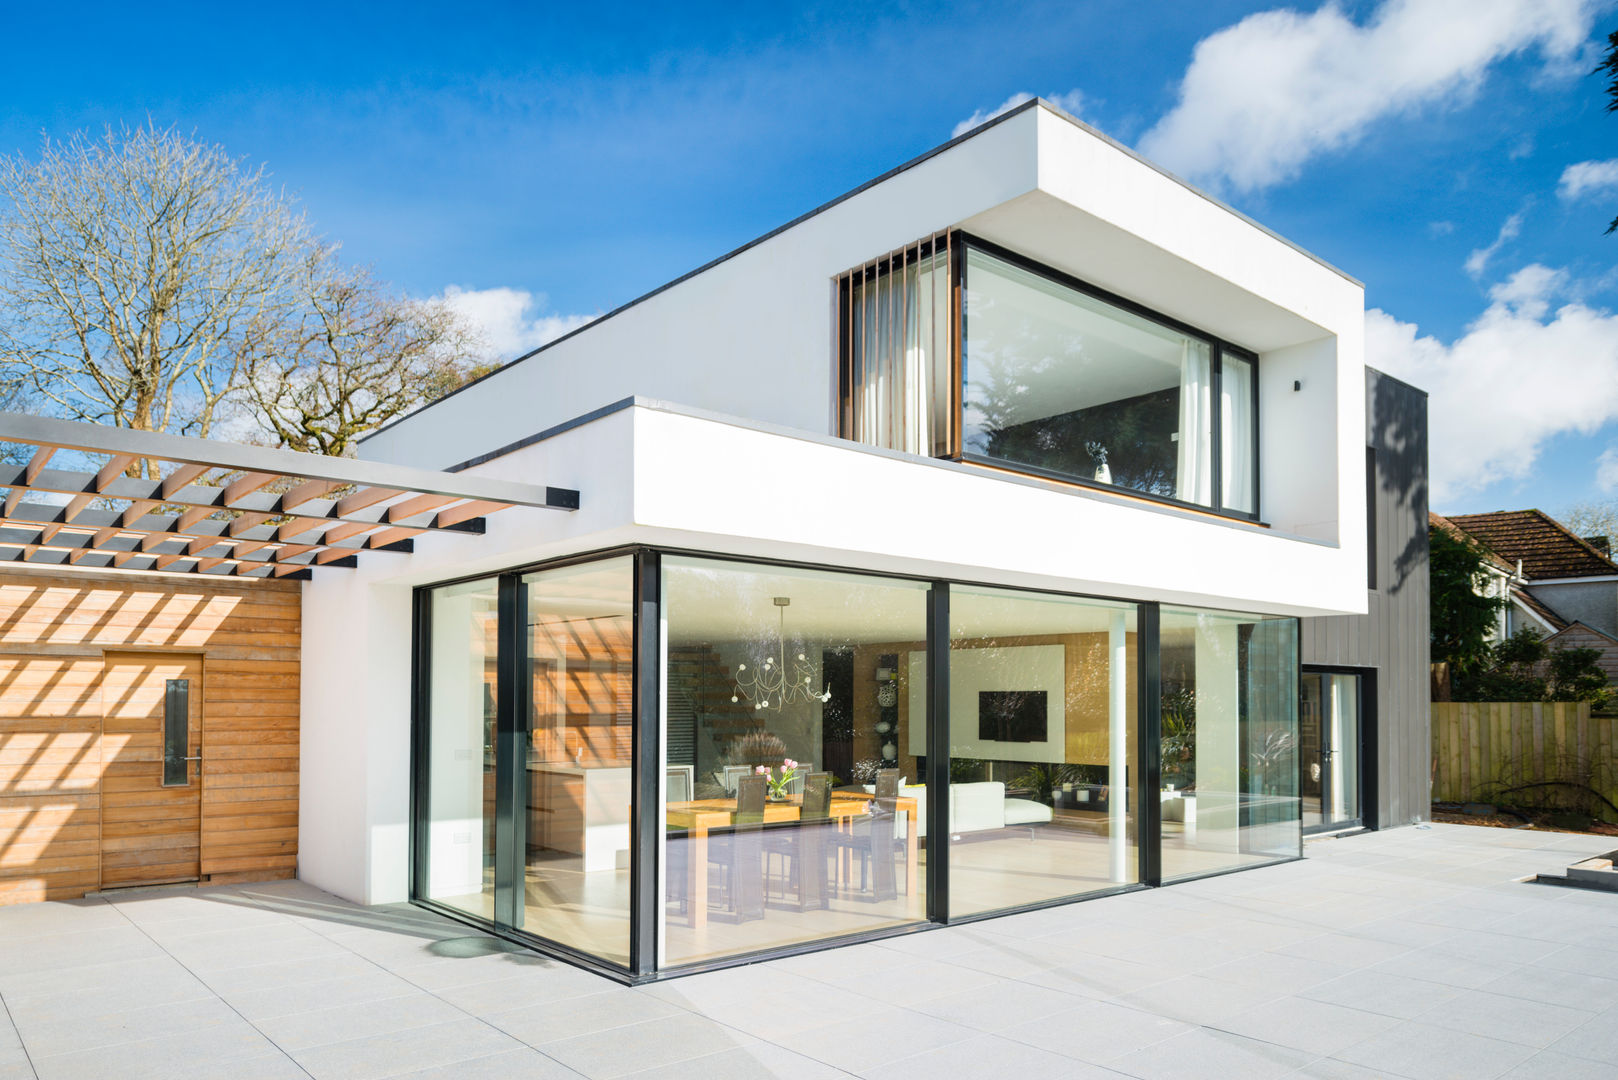 White Oaks Exterior Barc Architects Casas modernas: Ideas, diseños y decoración contemporary,modern,bold,glass,render,flat roof